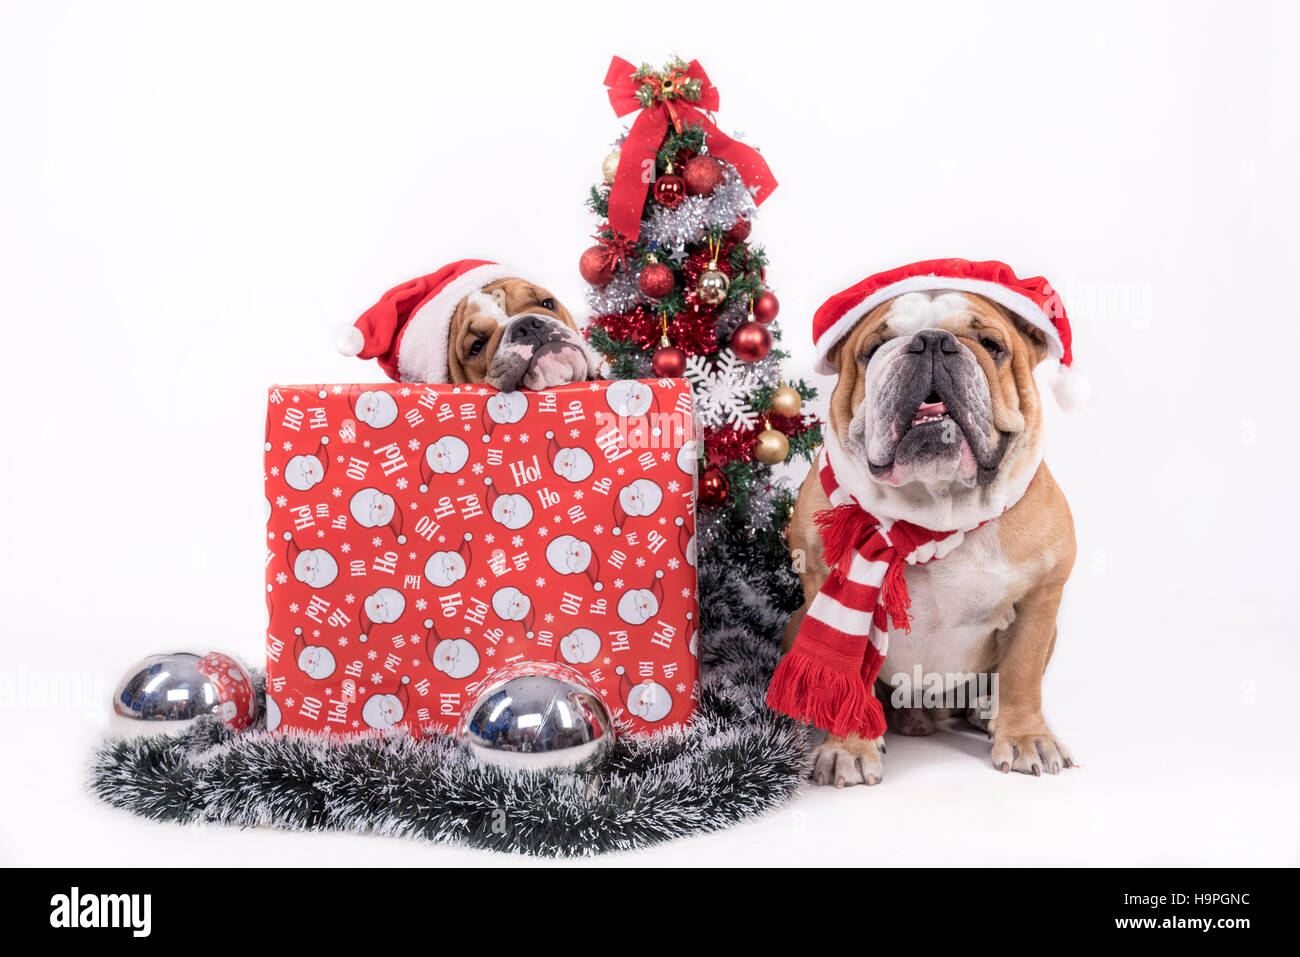 Bulldog anglais avec arbre de Noël,selective focus et isolé sur fond blanc Banque D'Images